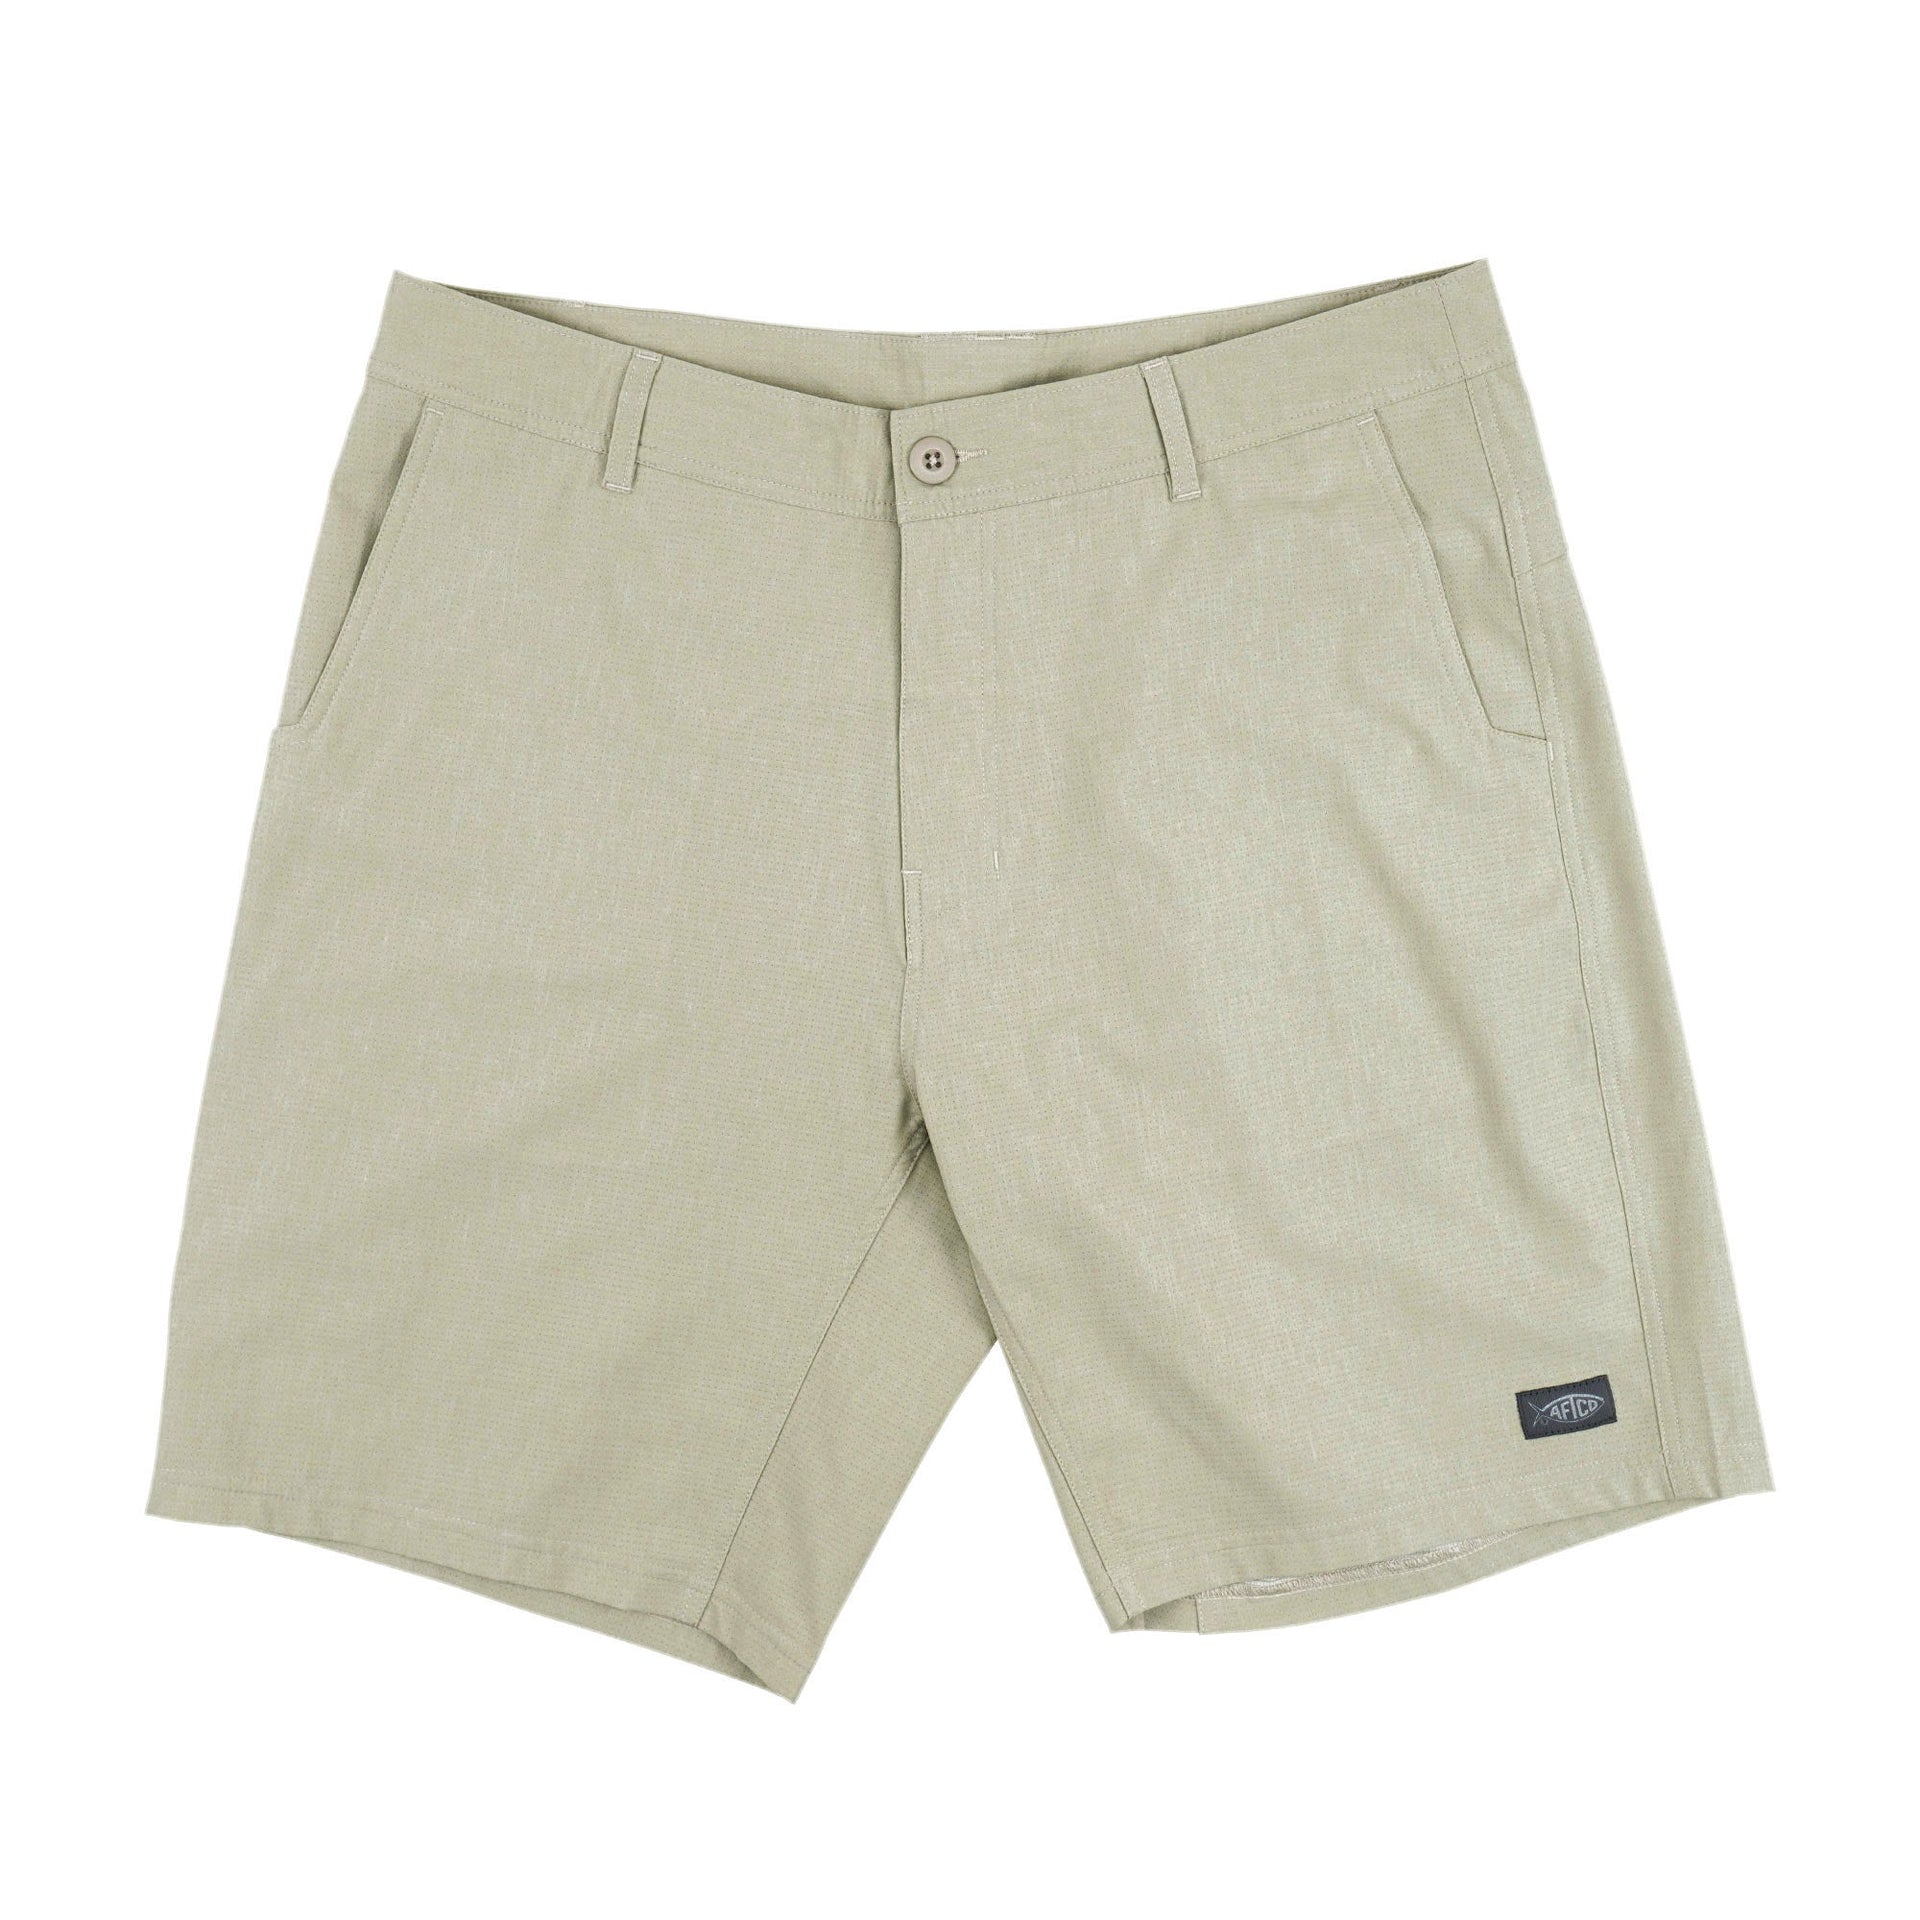 AFTCO Men's Air O Mesh Fishing Shorts, 32, Sand